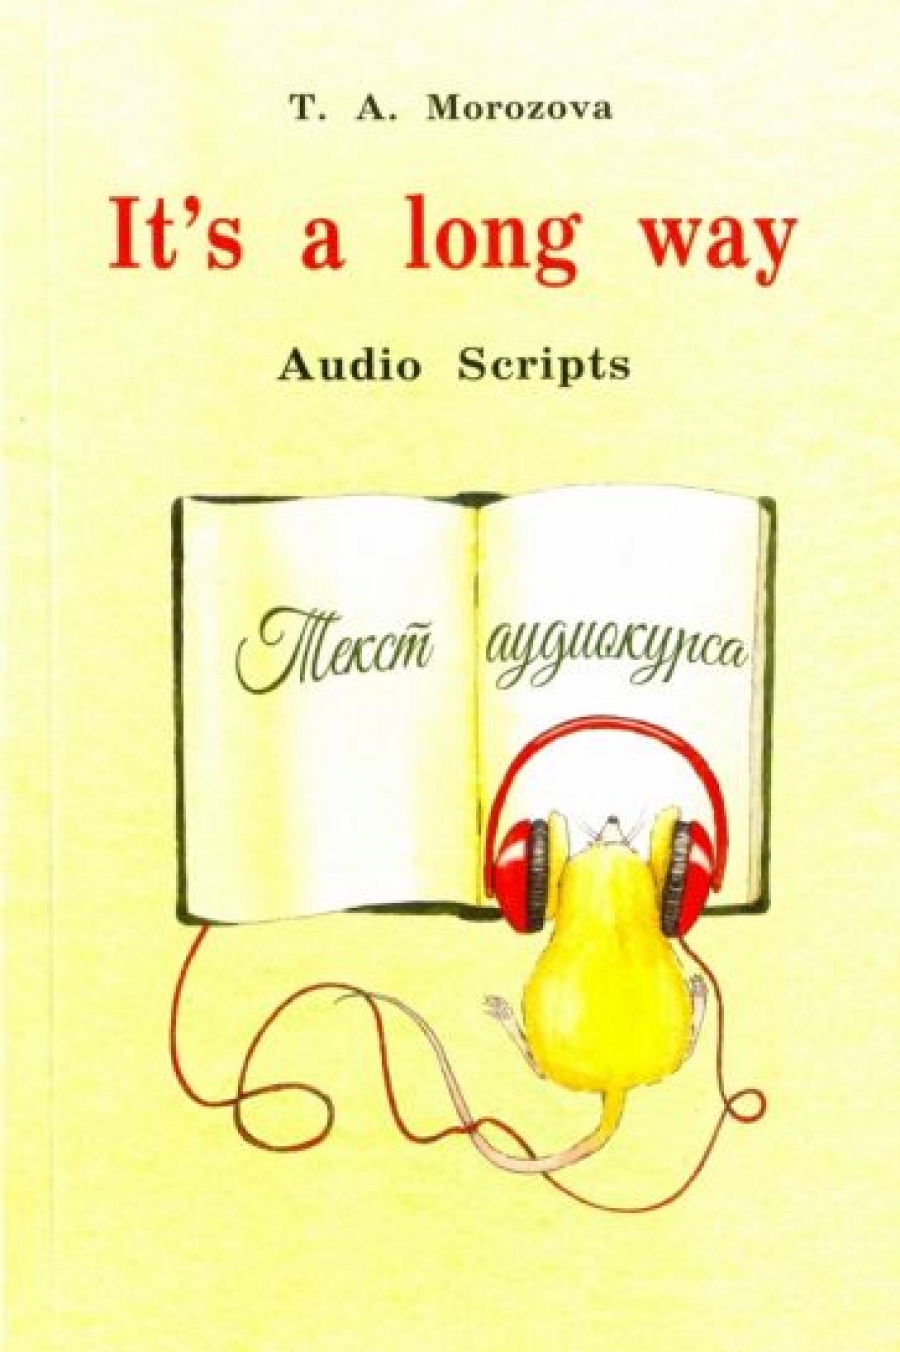  .. It's a long way. Audio Scripts 